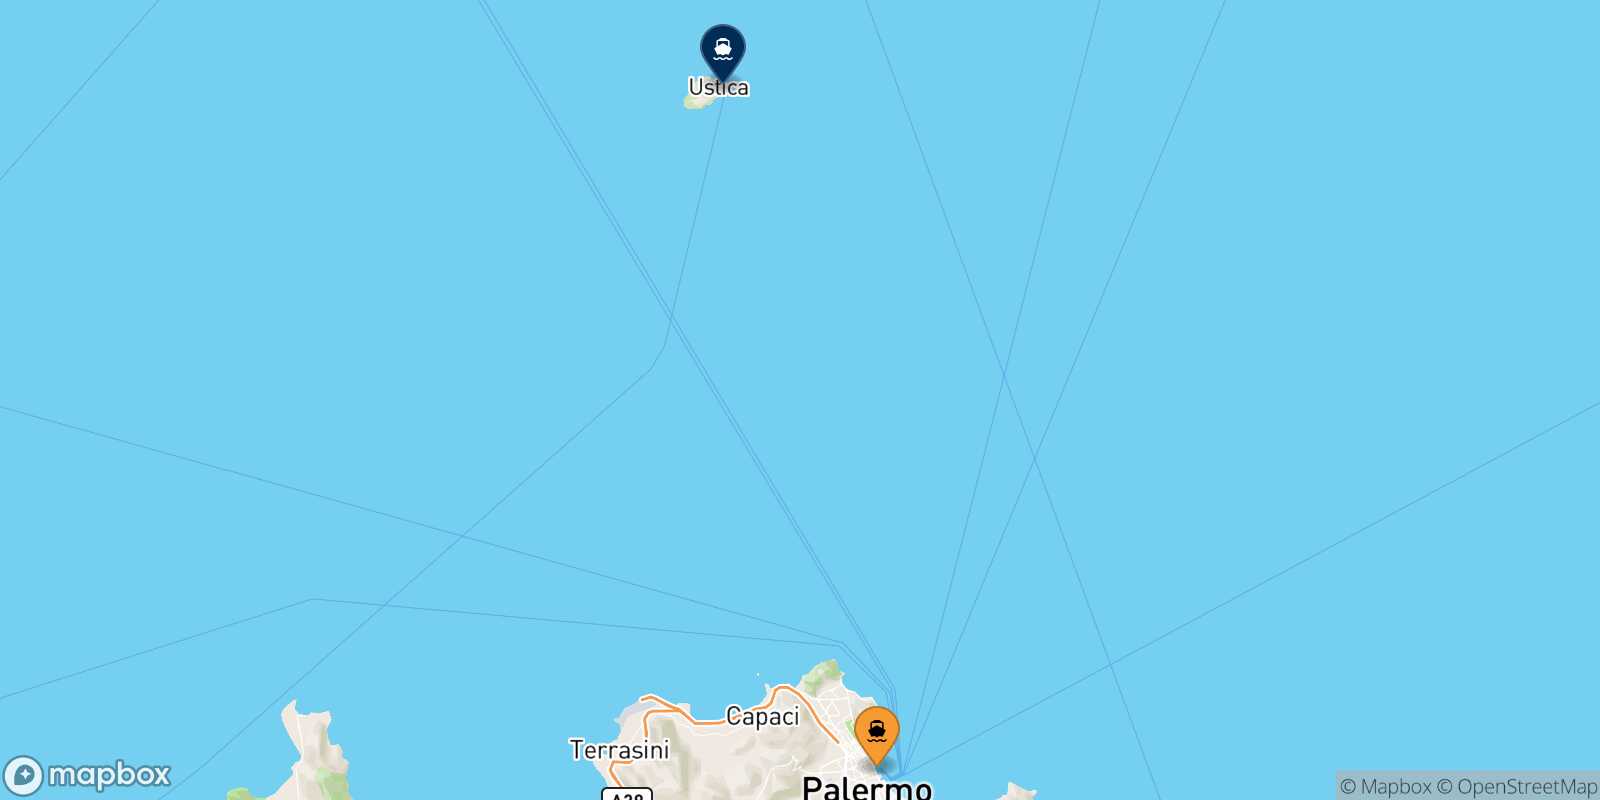 Mapa de los puertos conectados con  Cala S.maria (Ustica)